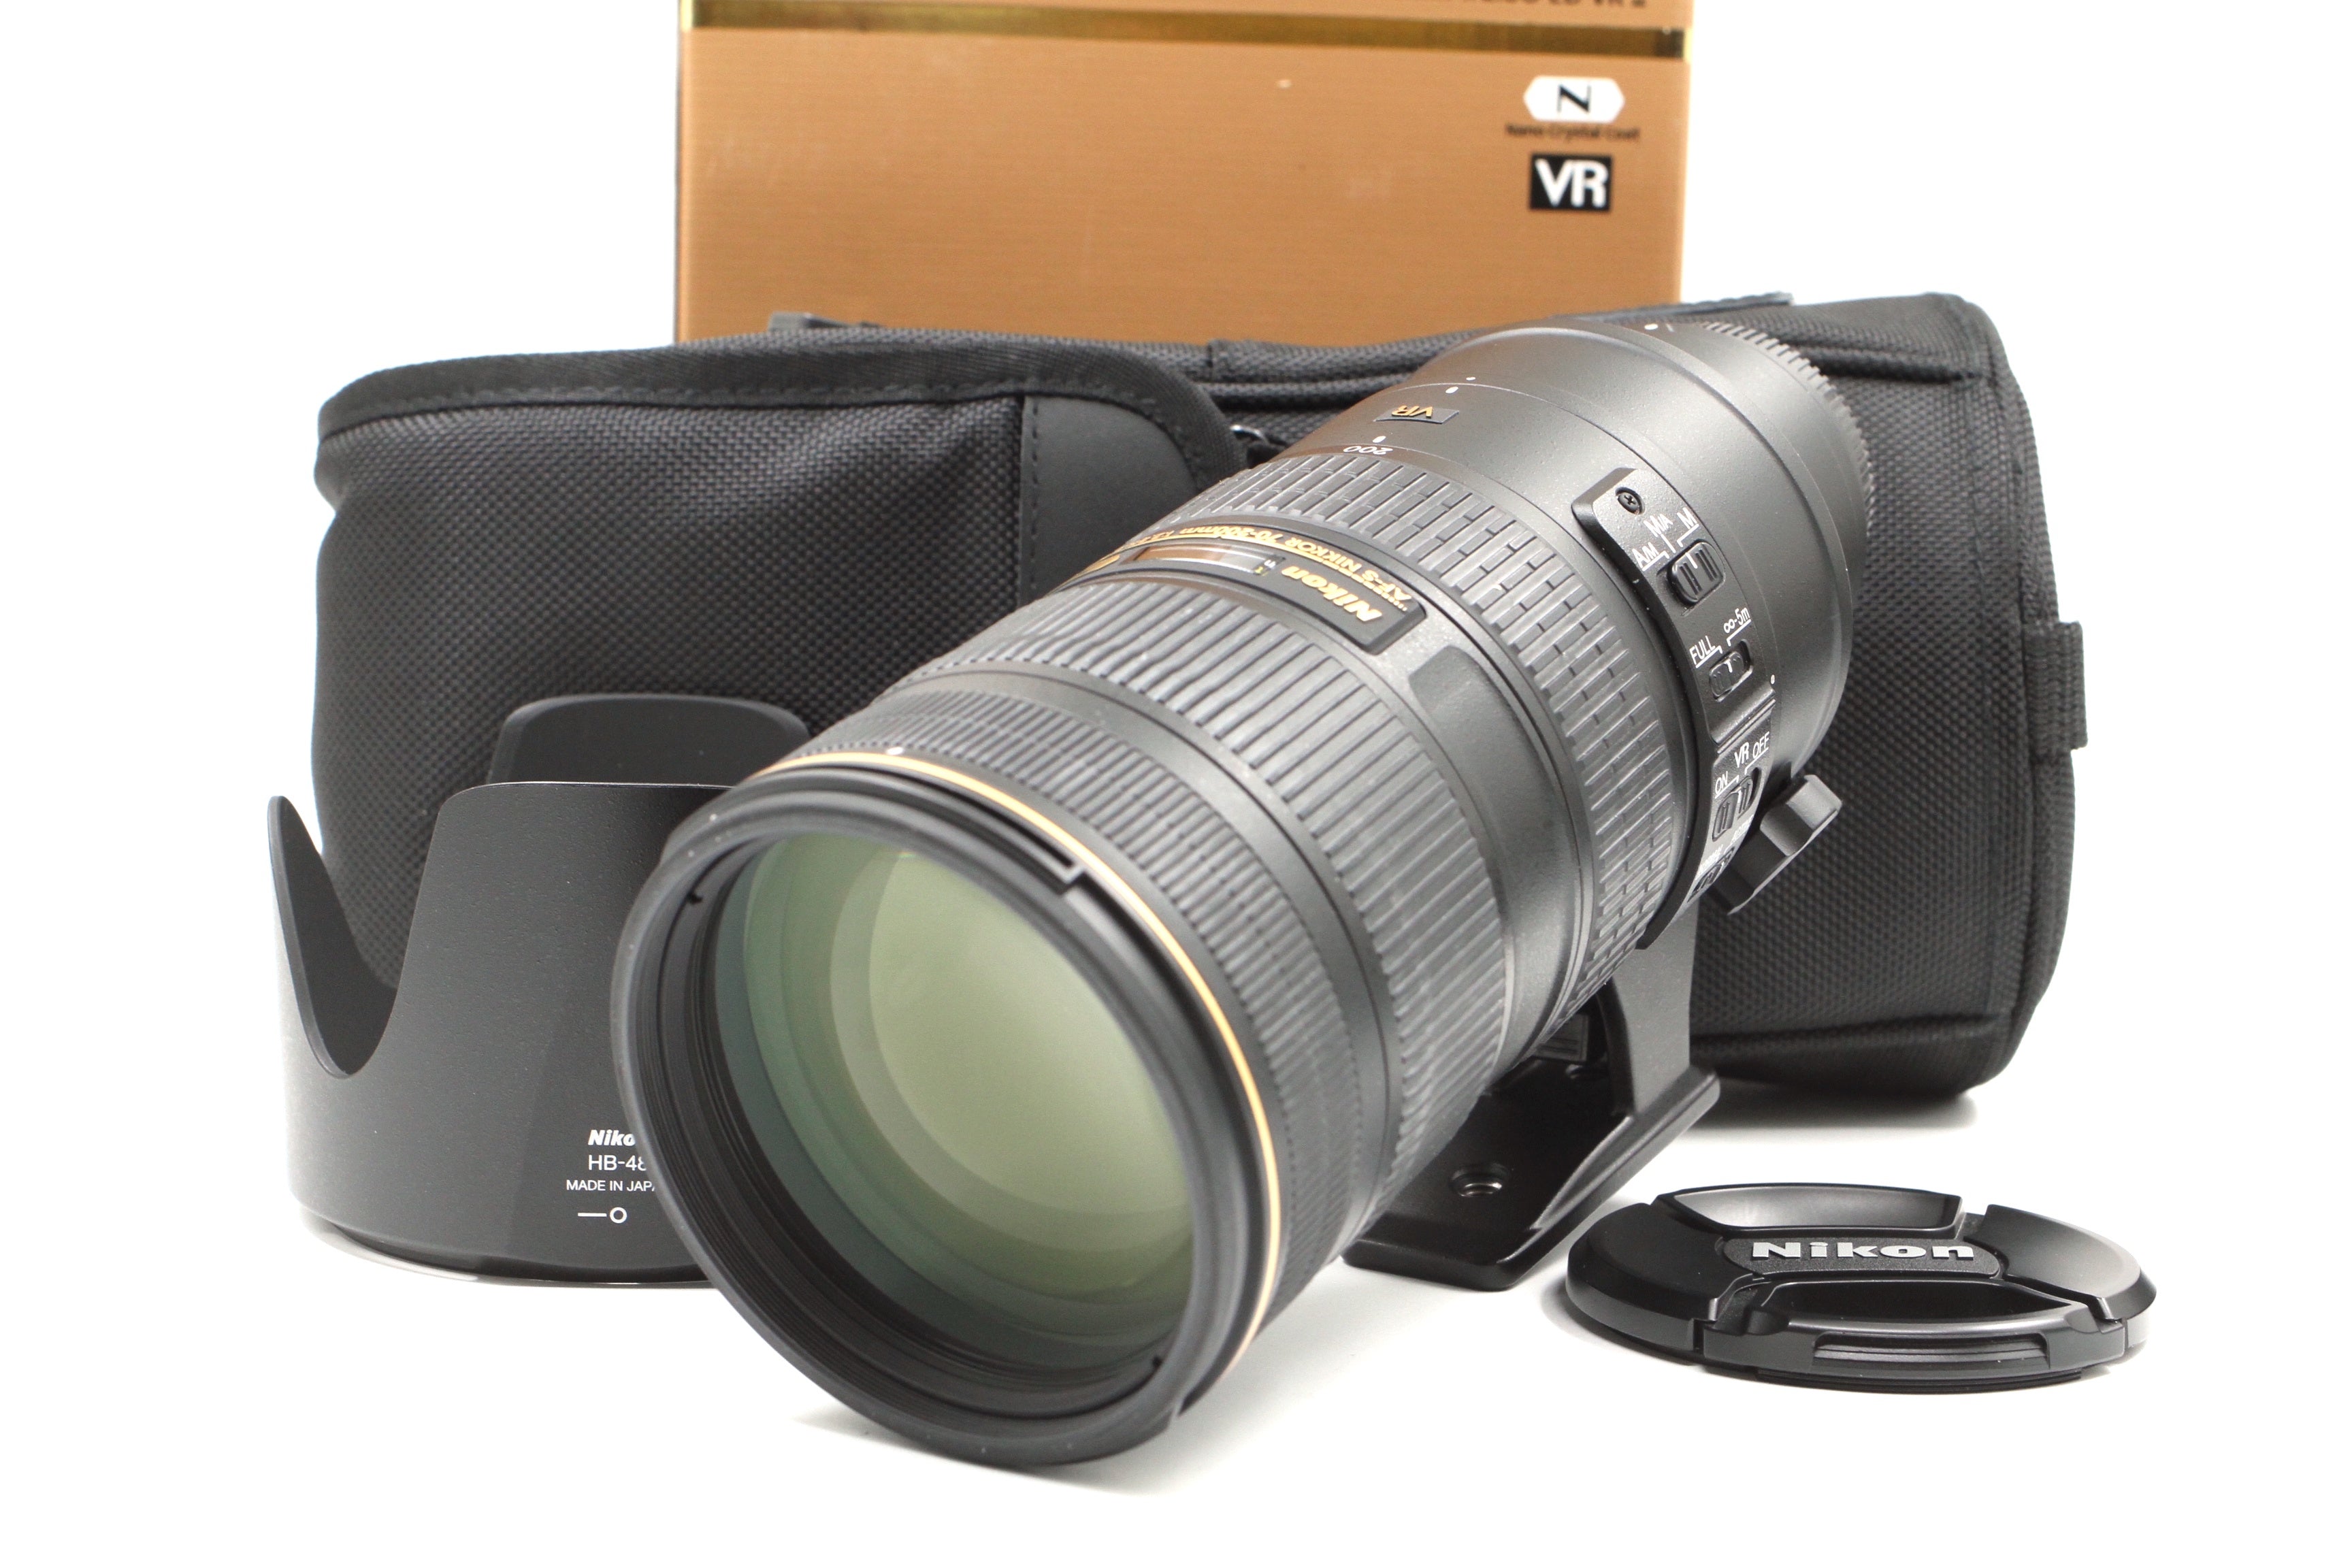 Nikon AF-S 70-200mm f2.8 G ED VR II